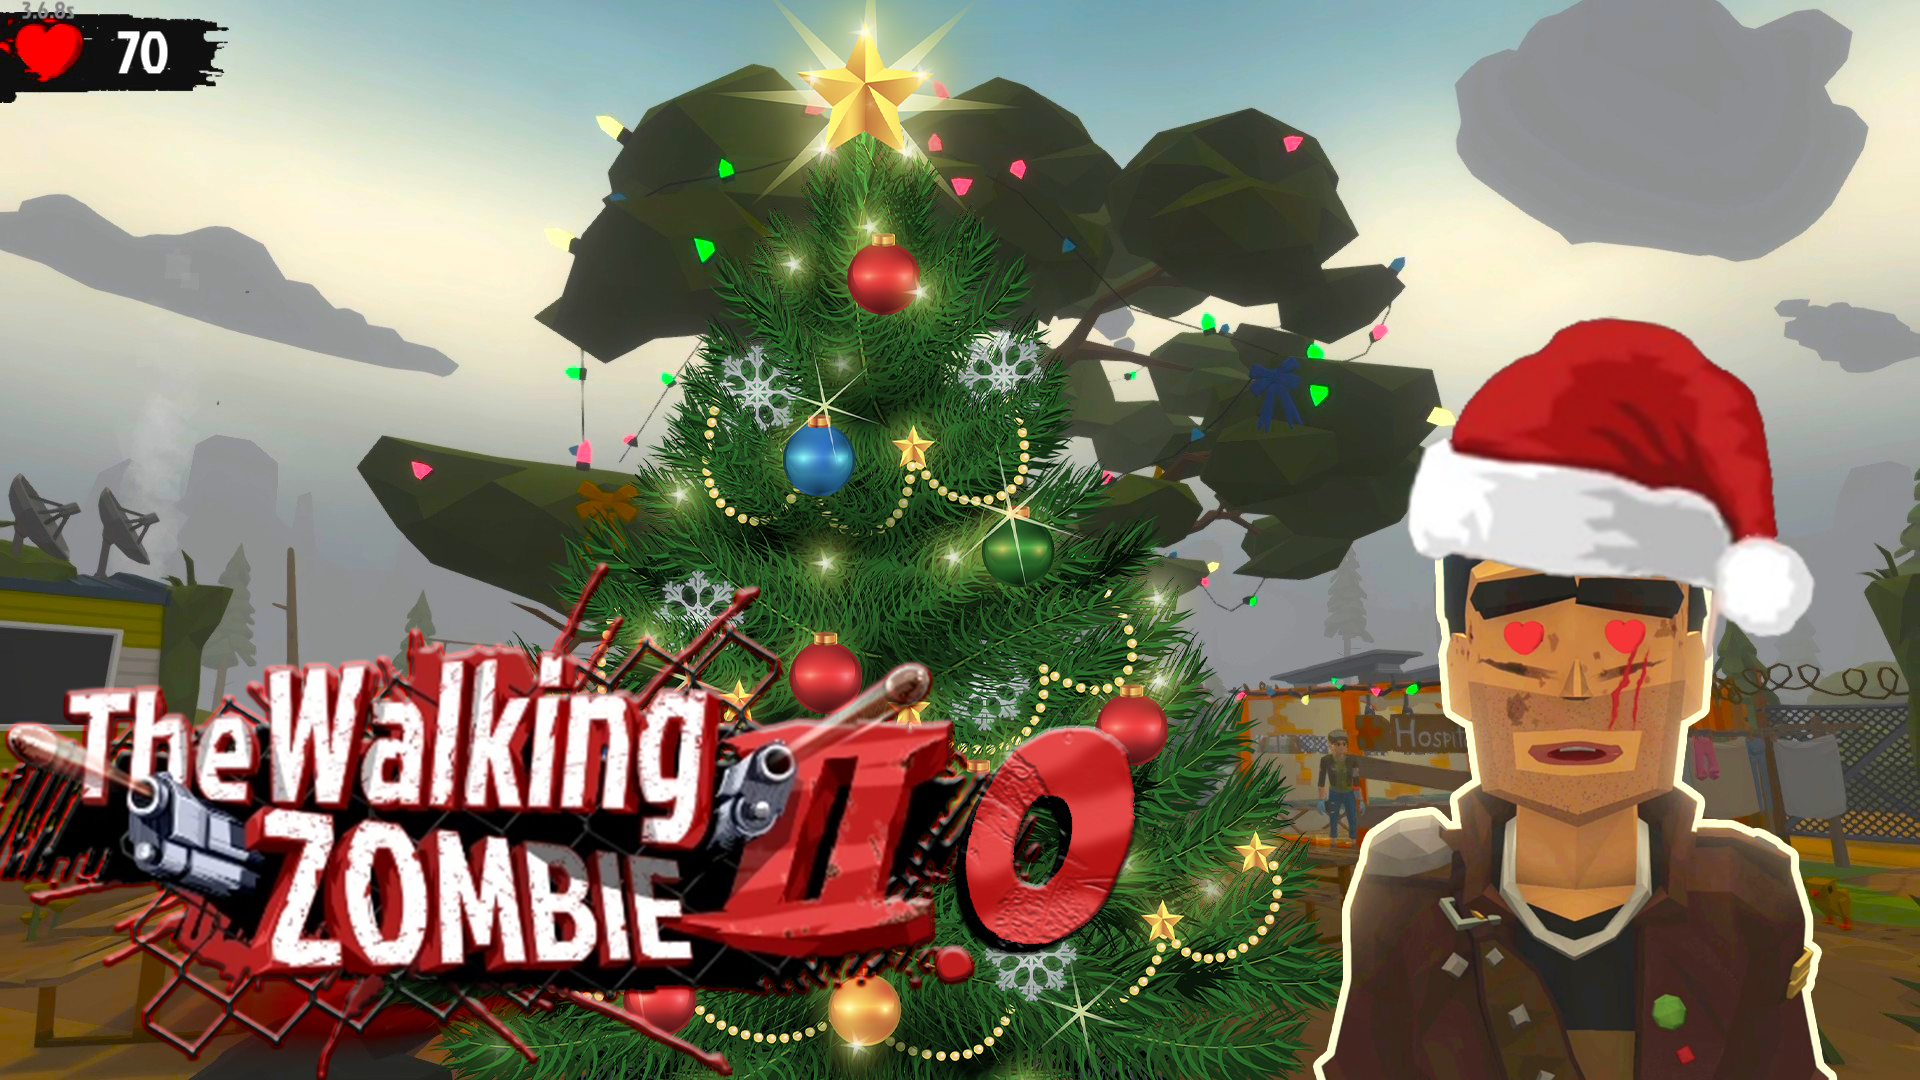 The Walking Zombie 2 ► Новогоднее поздравление от Избранного!